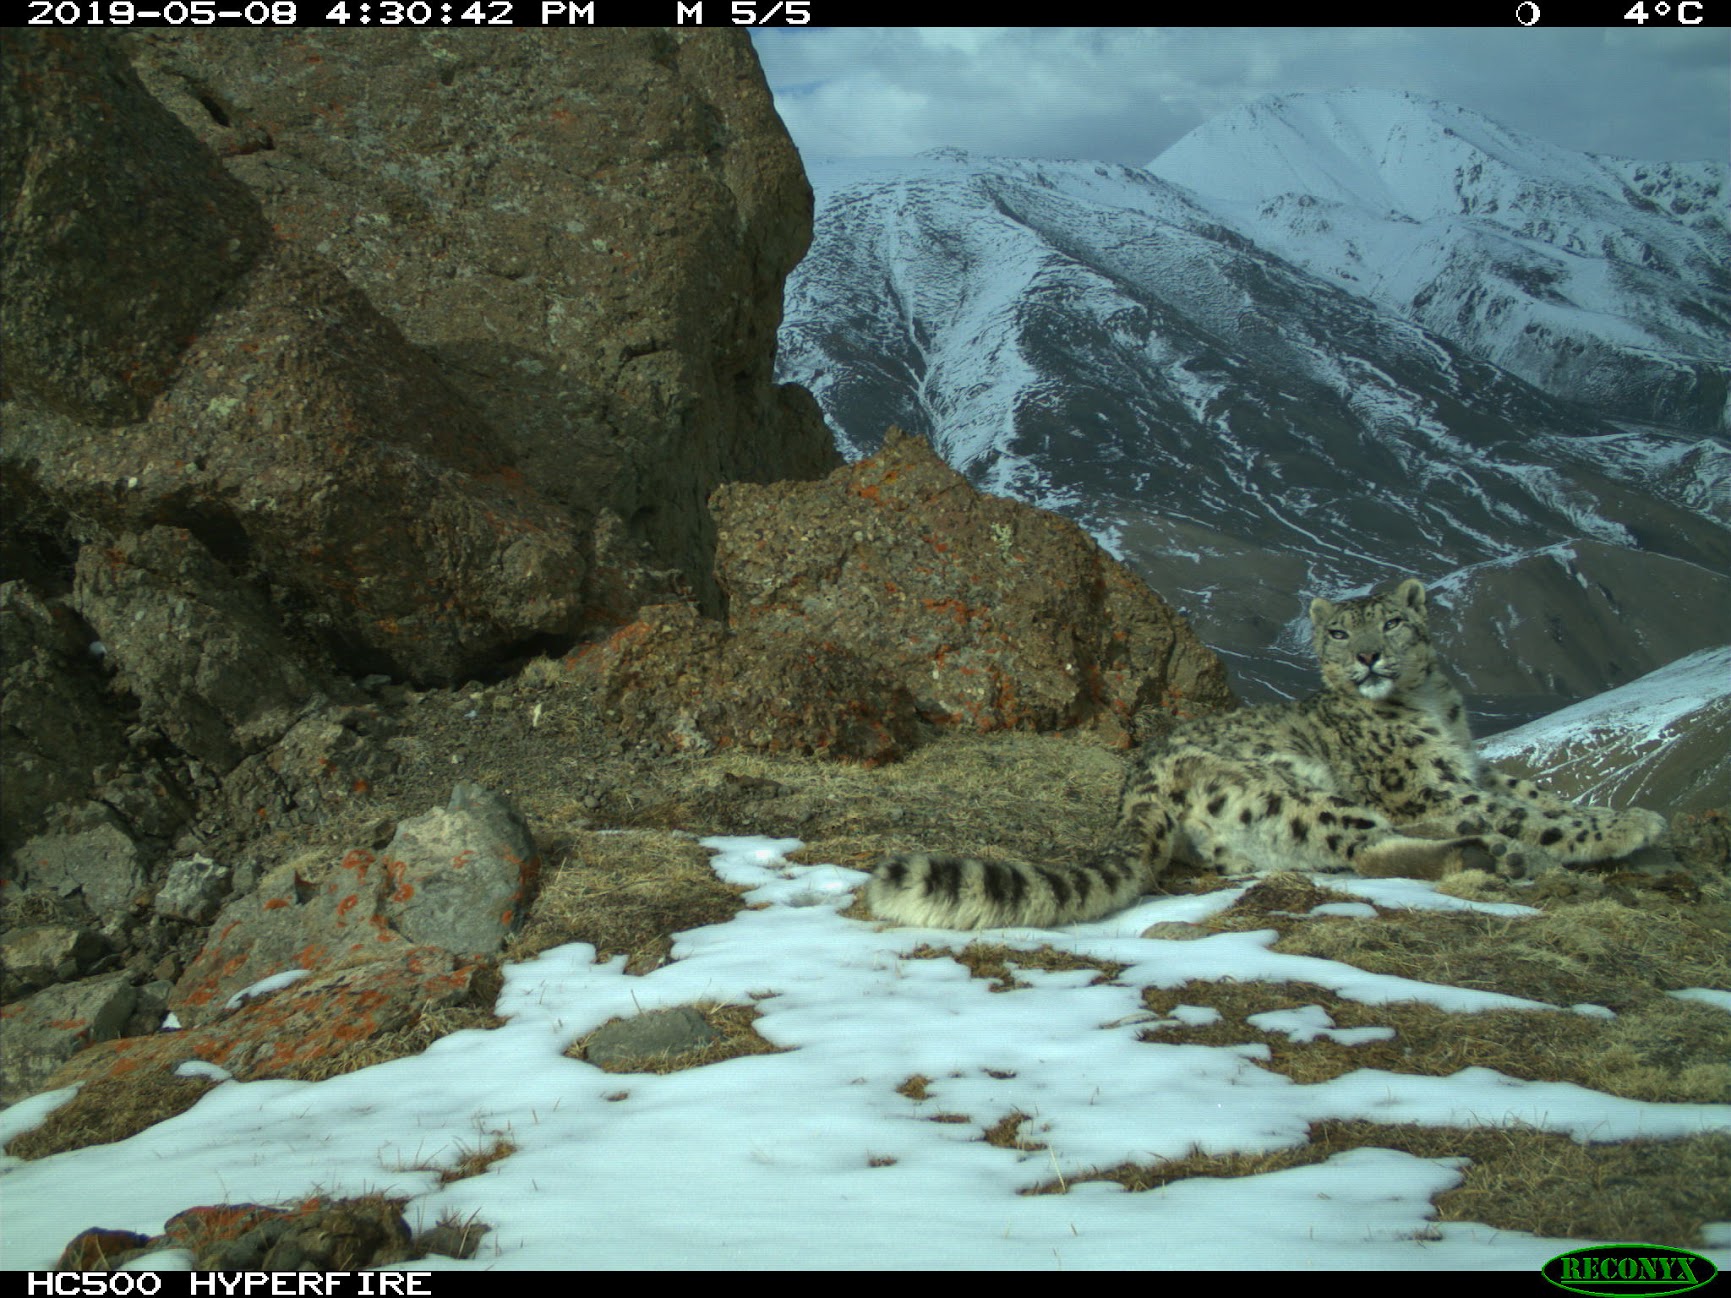 immagine-del-leopardo-delle-nevi-scattata-dalla-fototrappola-francesco-rovero-2.jpg